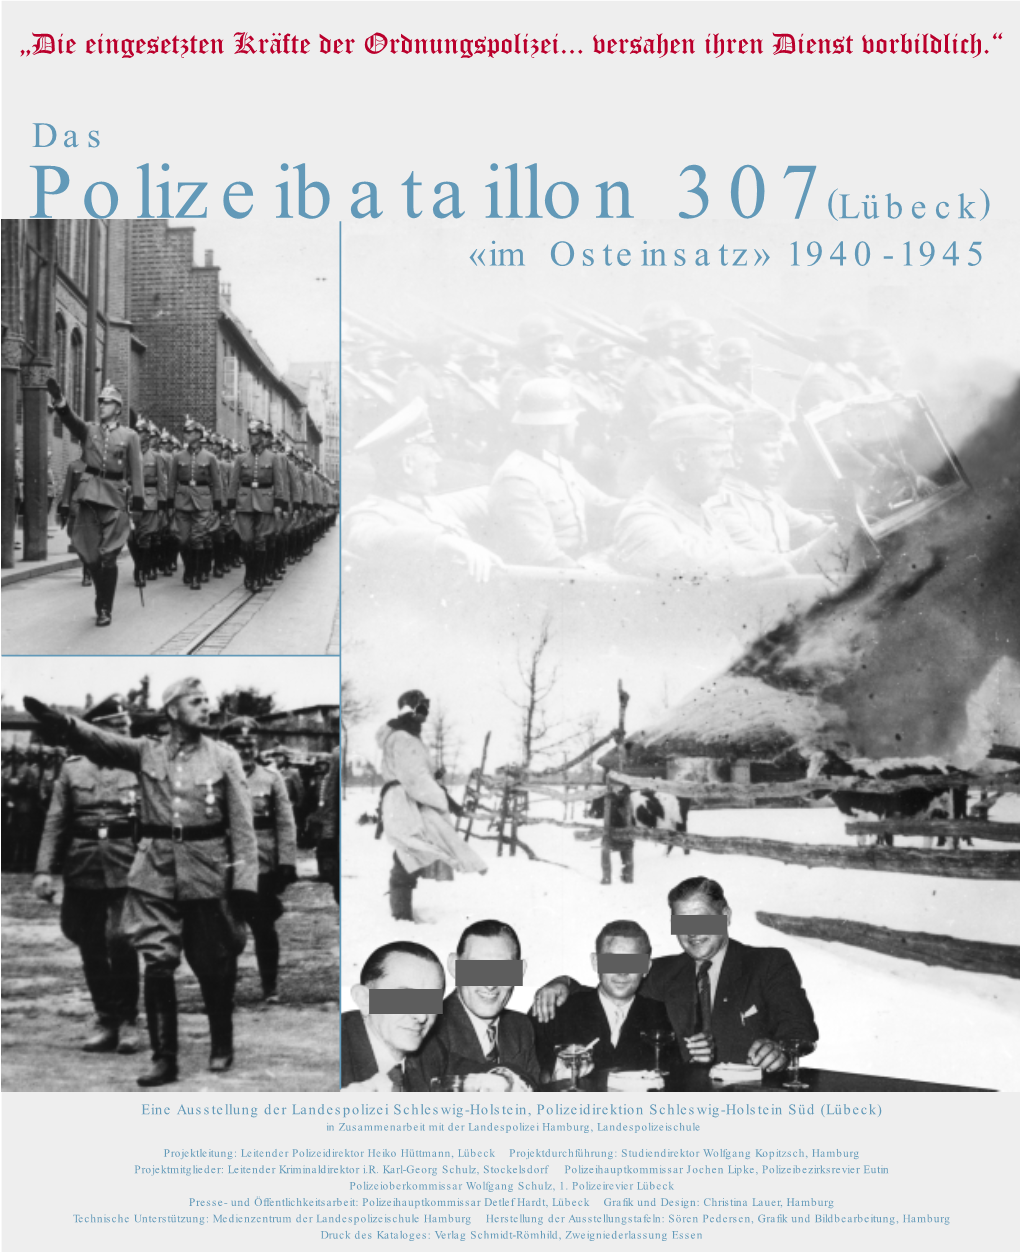 Polizeibataillon 307(Lübeck) «Im Osteinsatz» 1940 -1945